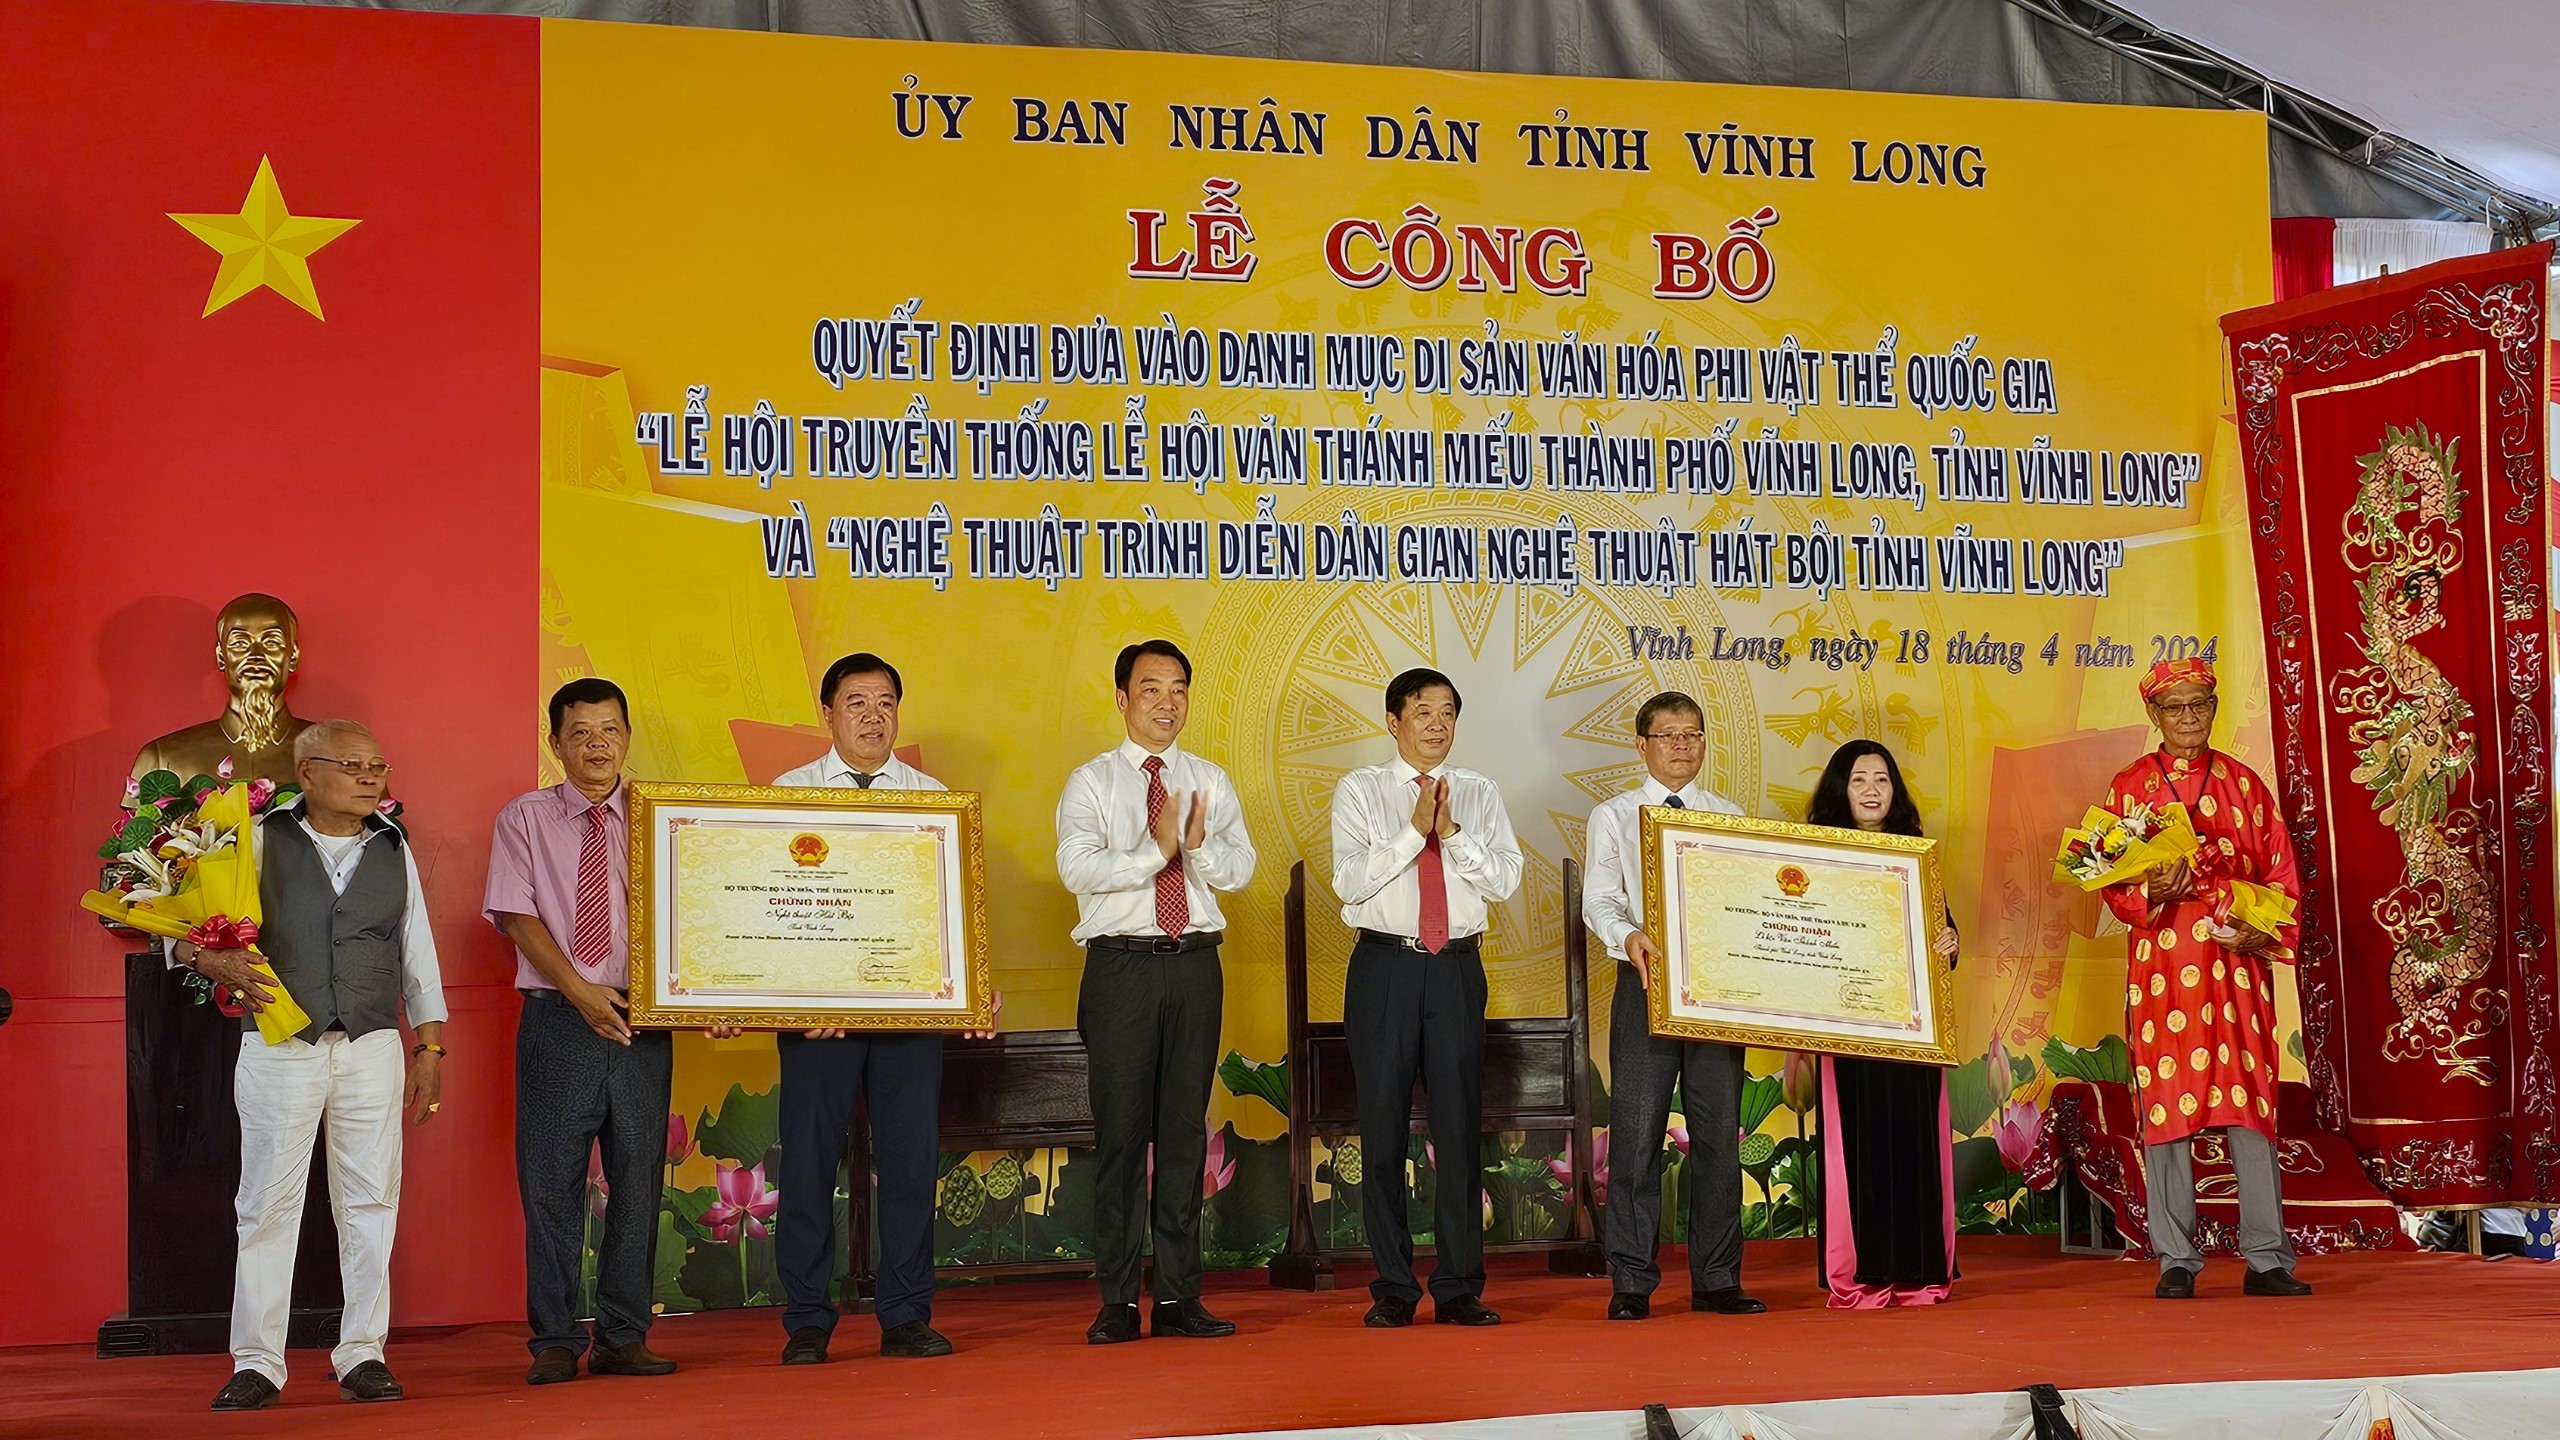 Ông Bùi Văn Nghiêm, Bí thư Tỉnh ủy và ông Lữ Quang Ngời, Chủ tịch UBND tỉnh Vĩnh Long trao quyết định của Bộ VH-TT-DL công nhận 2 di tích văn hóa phi vật thể quốc gia ở Vĩnh Long